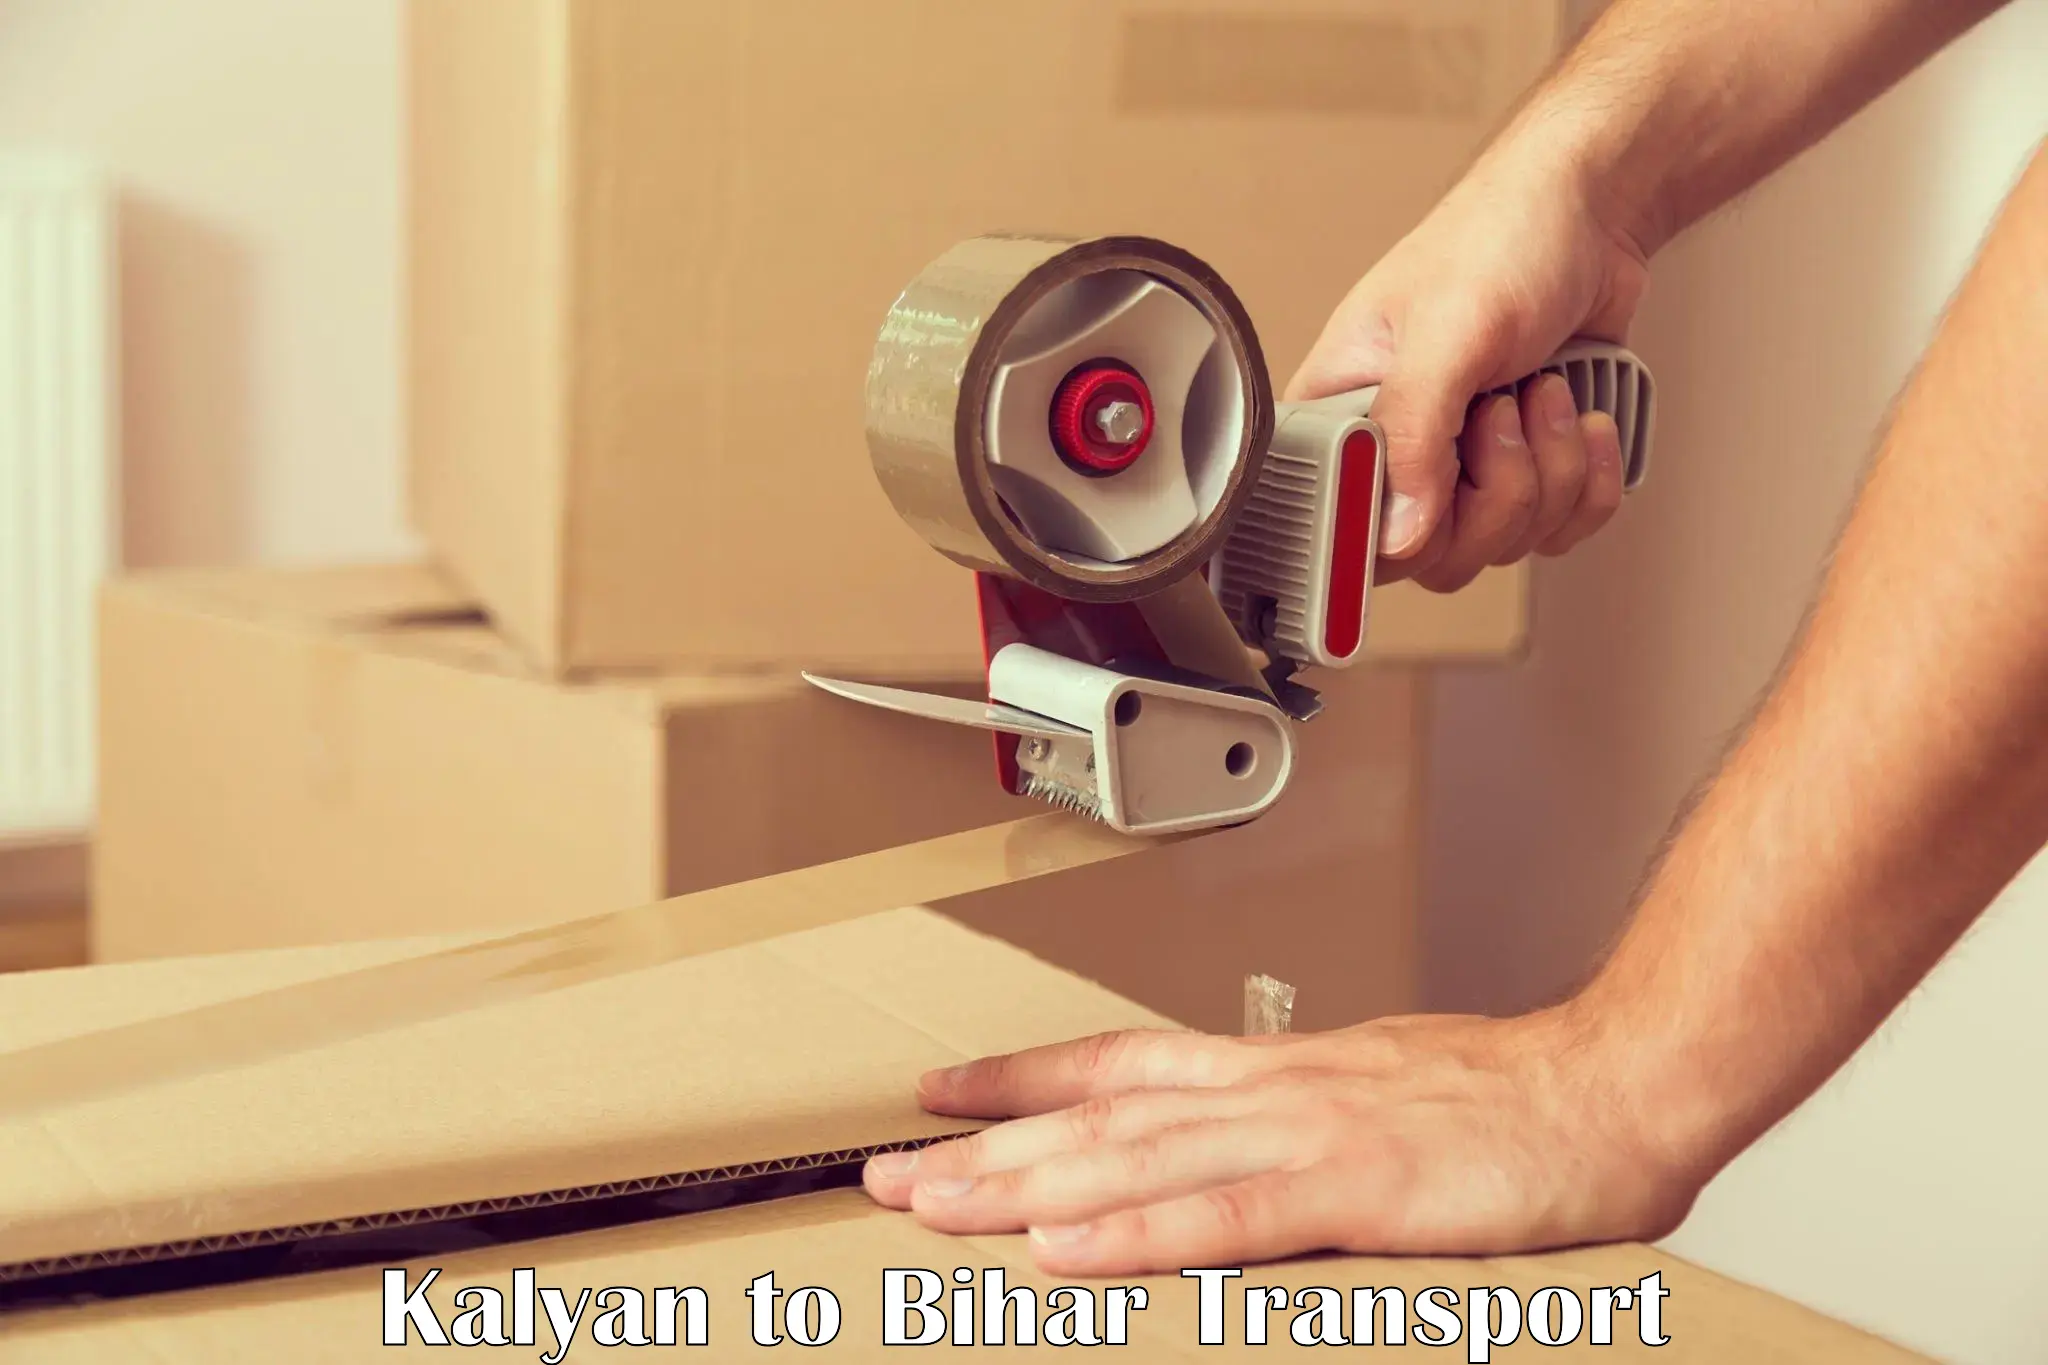 Furniture transport service Kalyan to Rusera